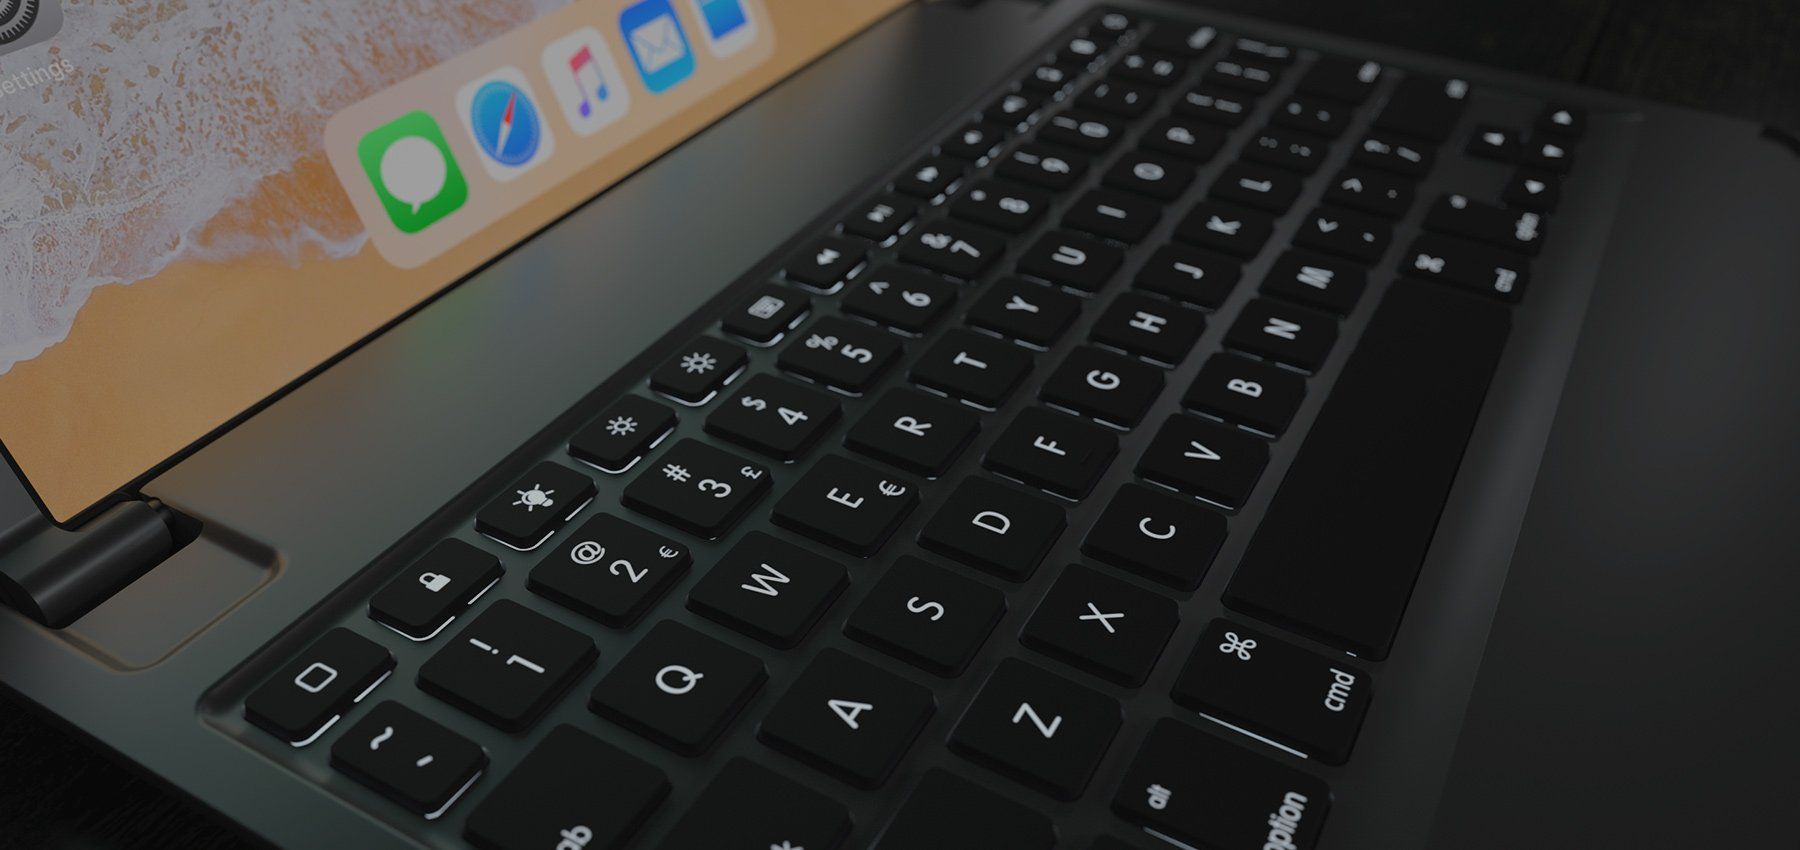 Brydge Aluminium Keyboard (iPad 10,2 (2019))